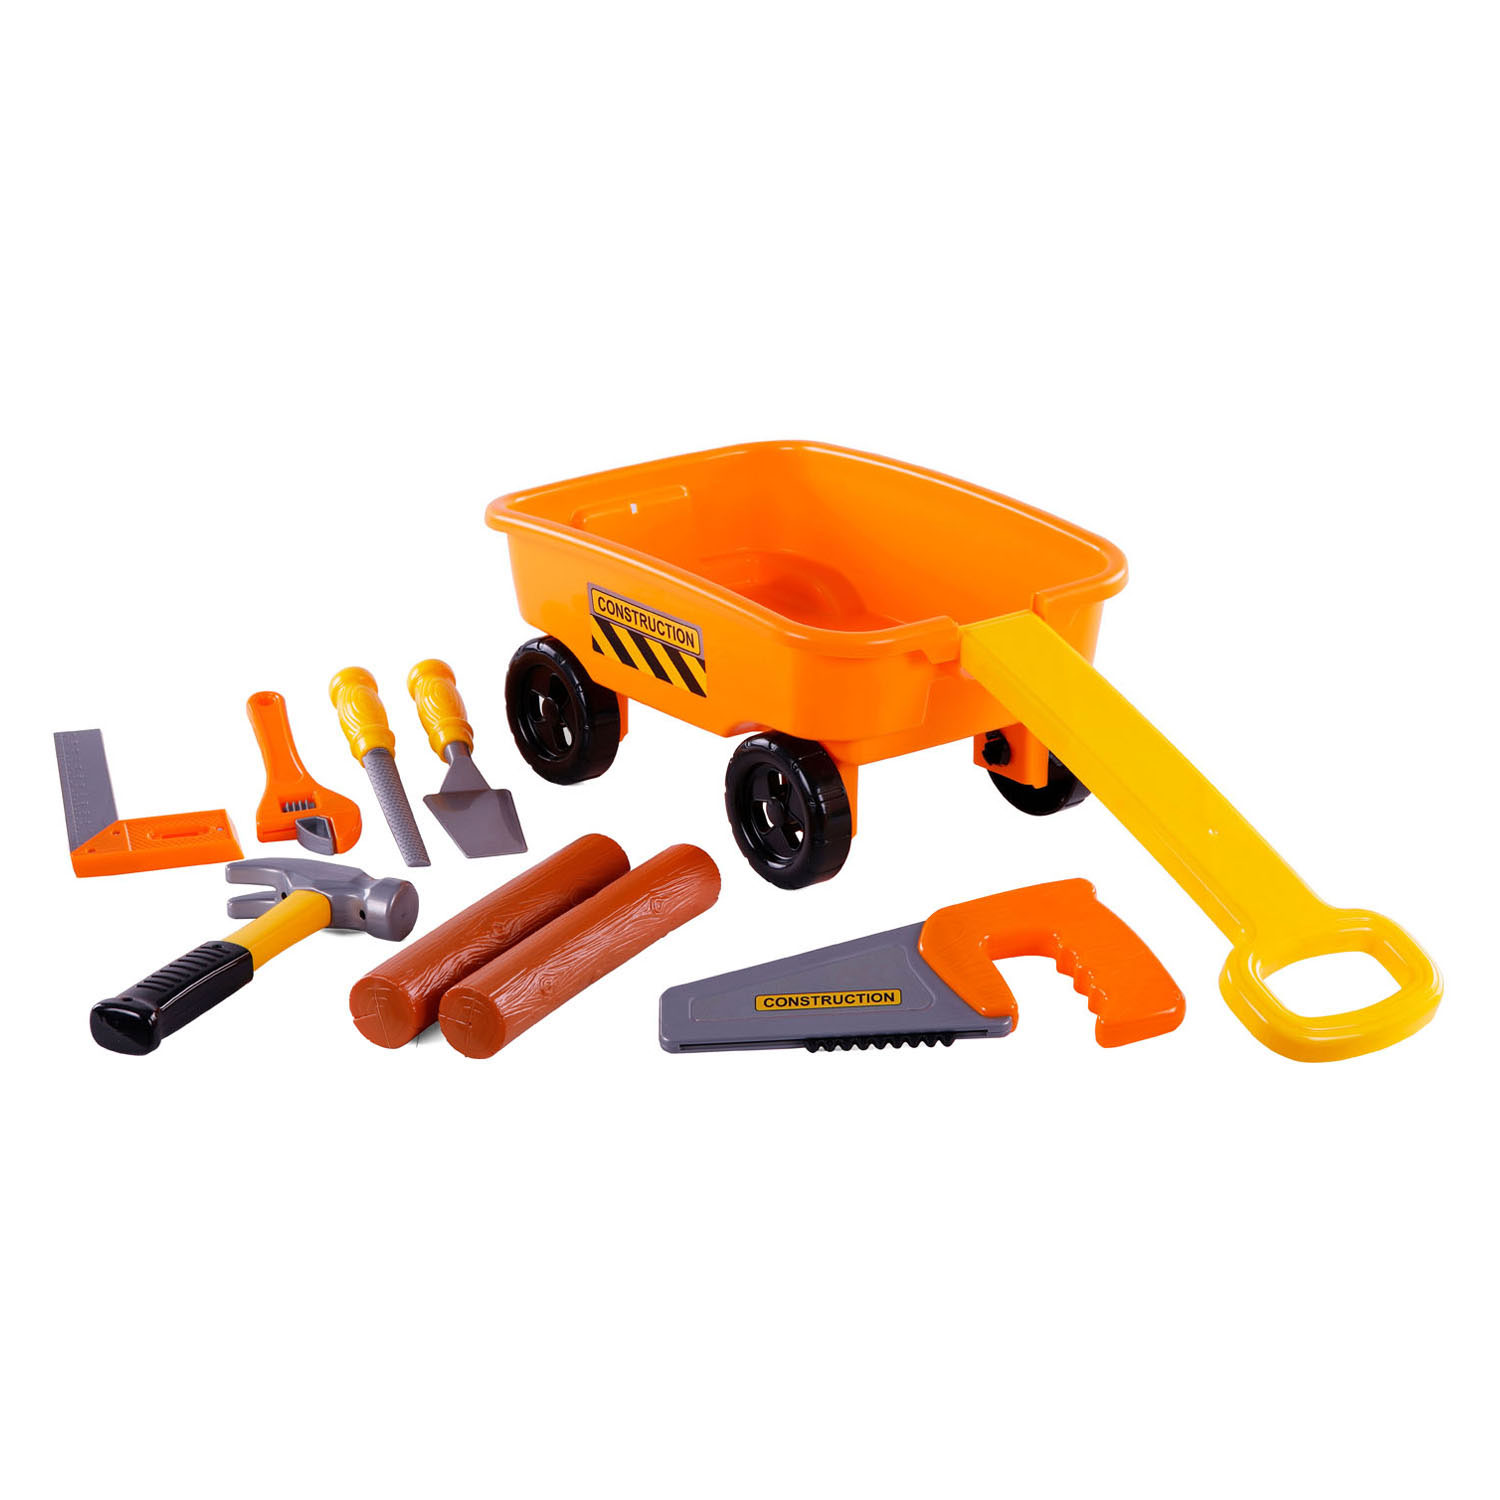 Cavallino Bollerwagen Orange mit Werkzeugen und Baumstämmen, 9-tlg.